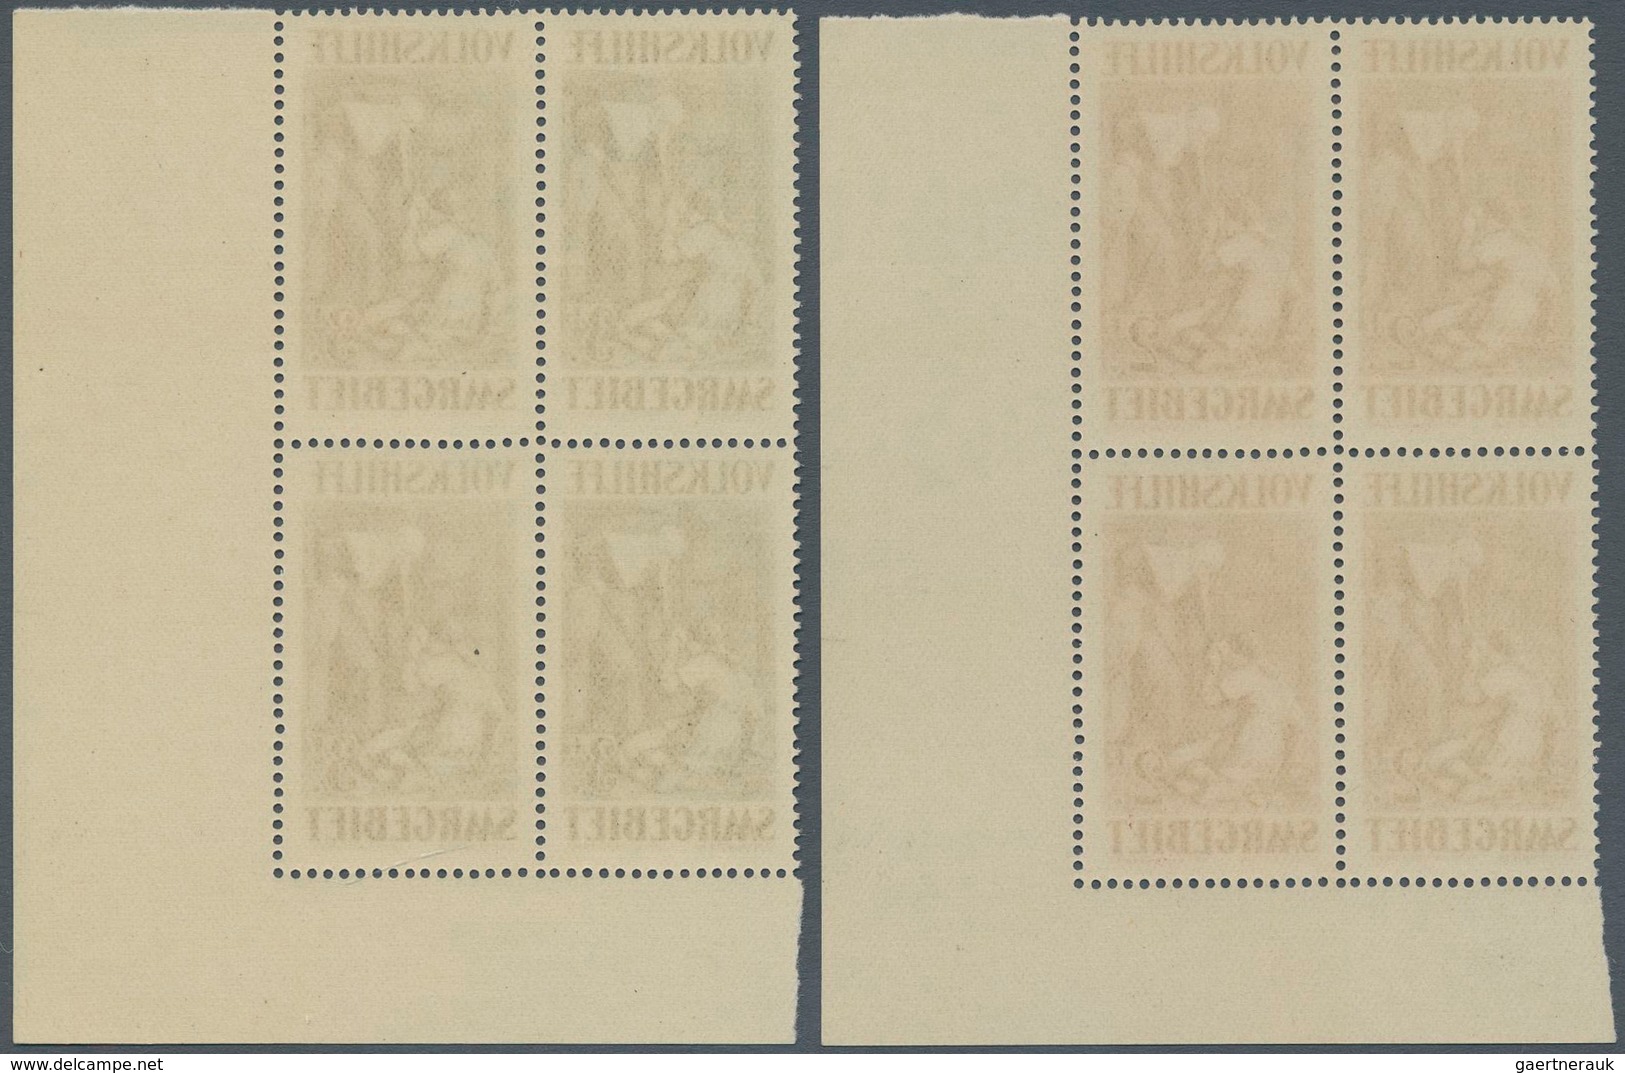 18996 Deutsche Abstimmungsgebiete: Saargebiet: 1929, Volkshilfe: Gemälde II, 40 C - 10 Fr, 7 postfrische V